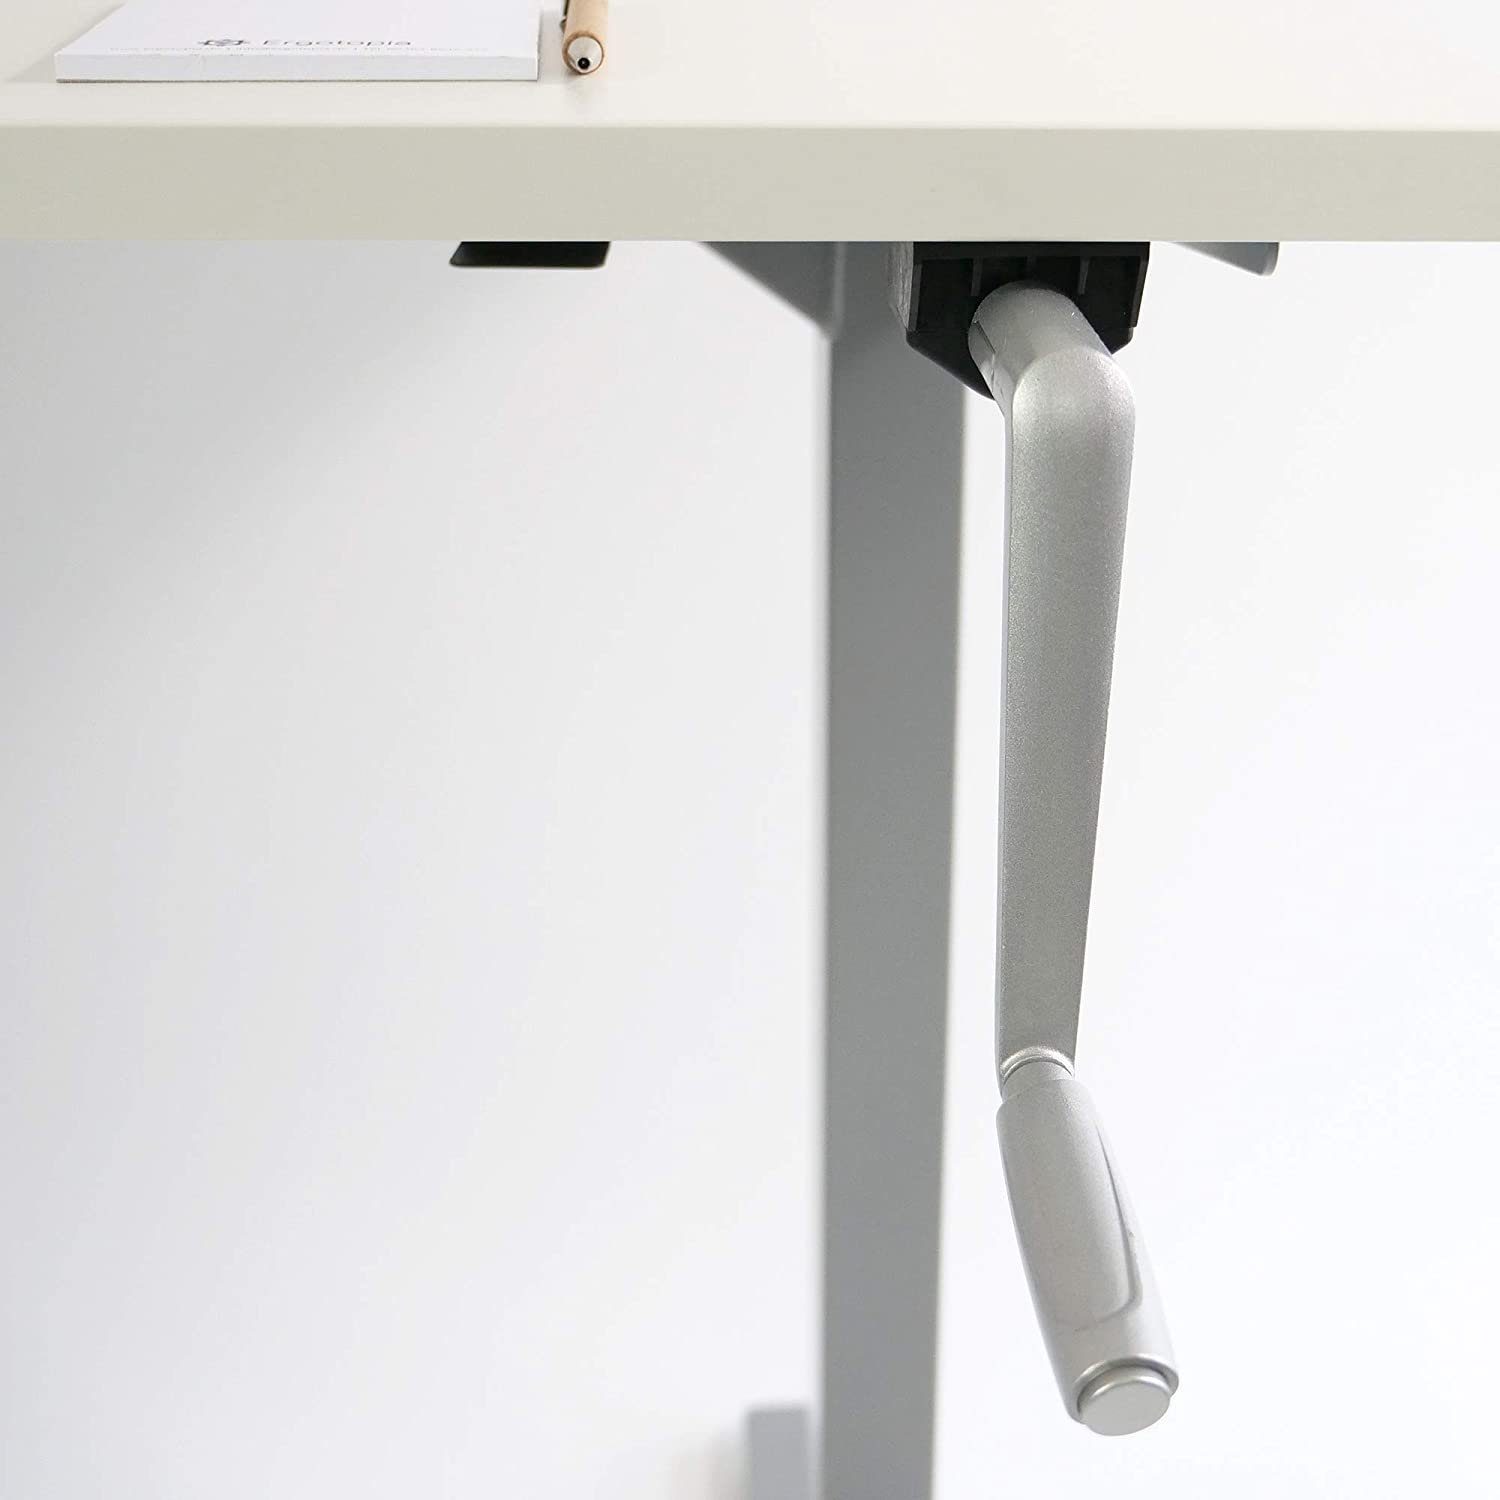 Tischgestell, Breite durch Kurbel Budget Ergotopia Schreibtisch Kurbel Desktopia verstellbar gängigen Tischplatten, für Höhenverstellbarkeit verstellbares Per Schreibtisch, Höhenverstellbarer Grau alle